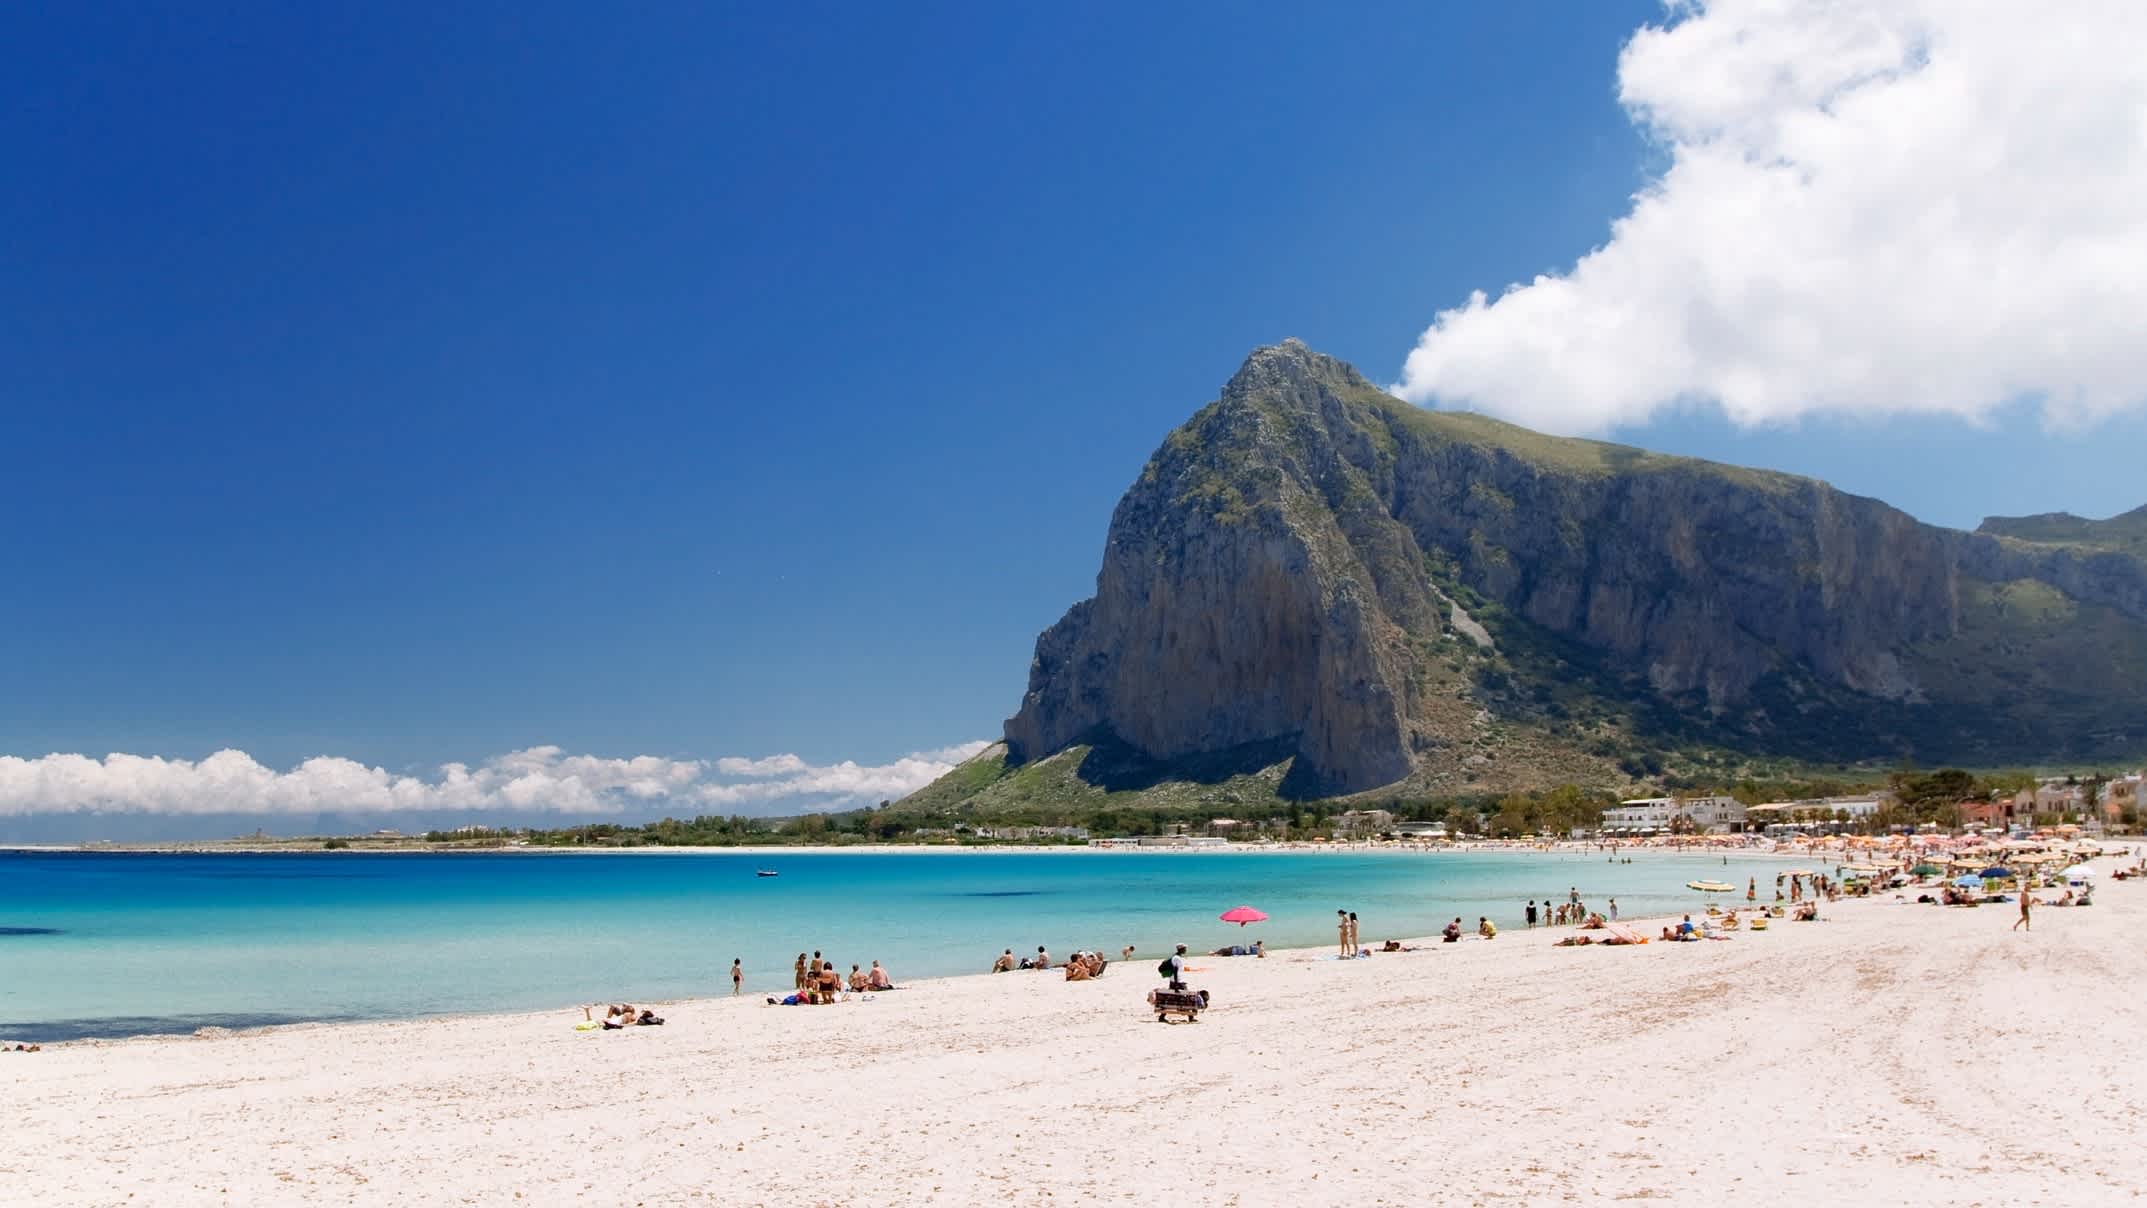 Blick zum Strand in San Vito Lo Capo, Sizilien, Italien mit einem imposanten Berg, blauem Wasser und weißem Sand.